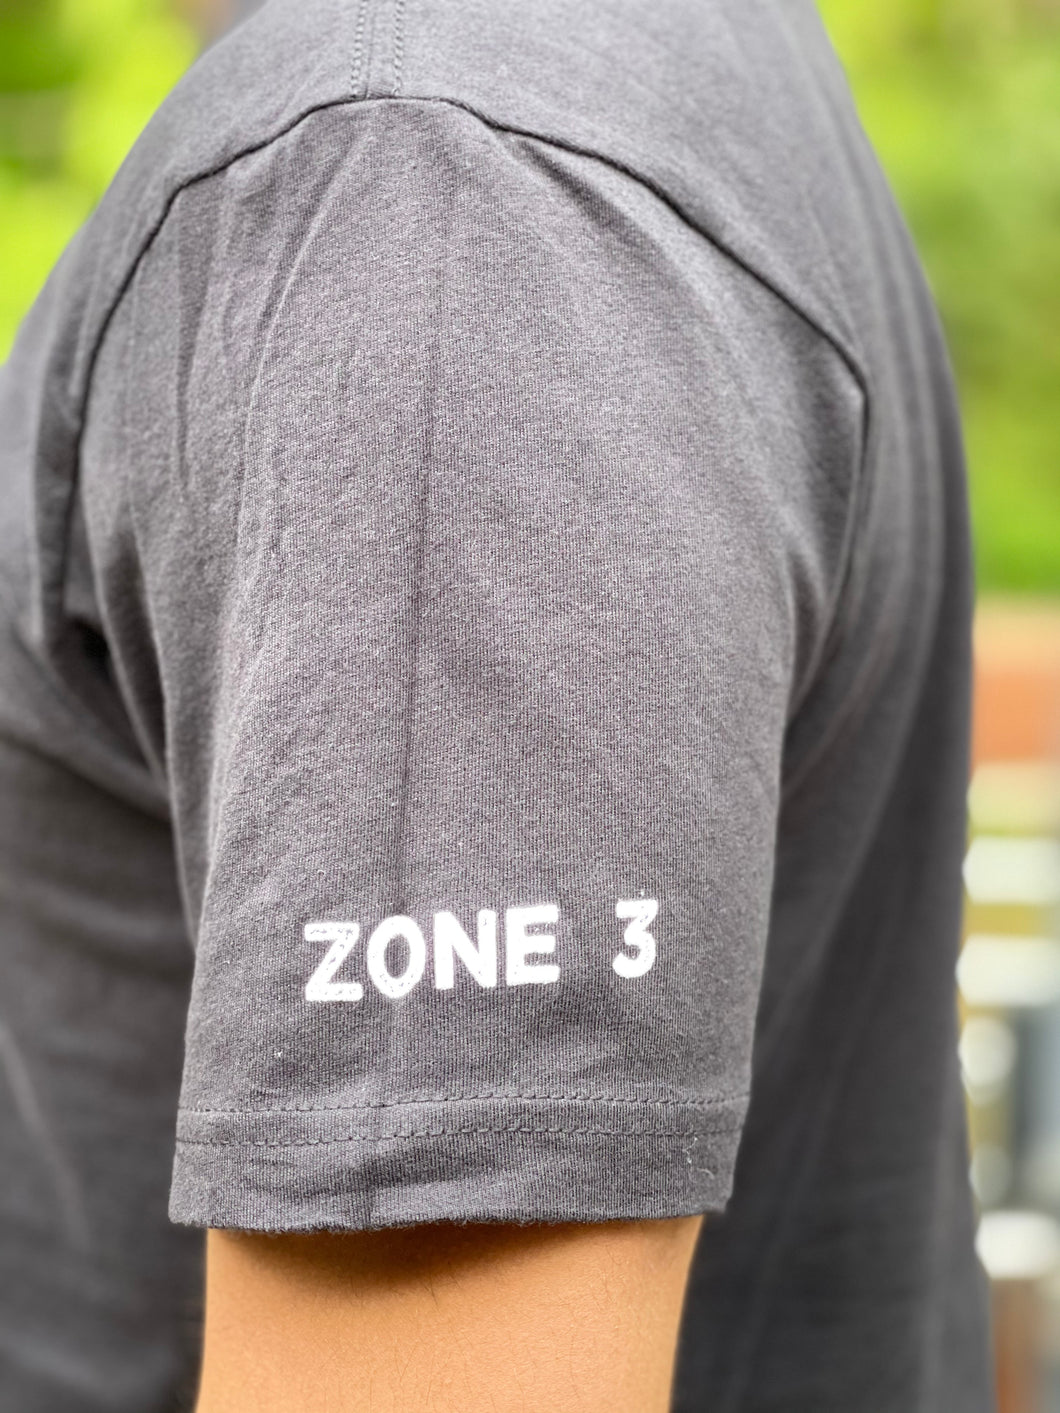 Zone 3, Humble Beginnings Shirt